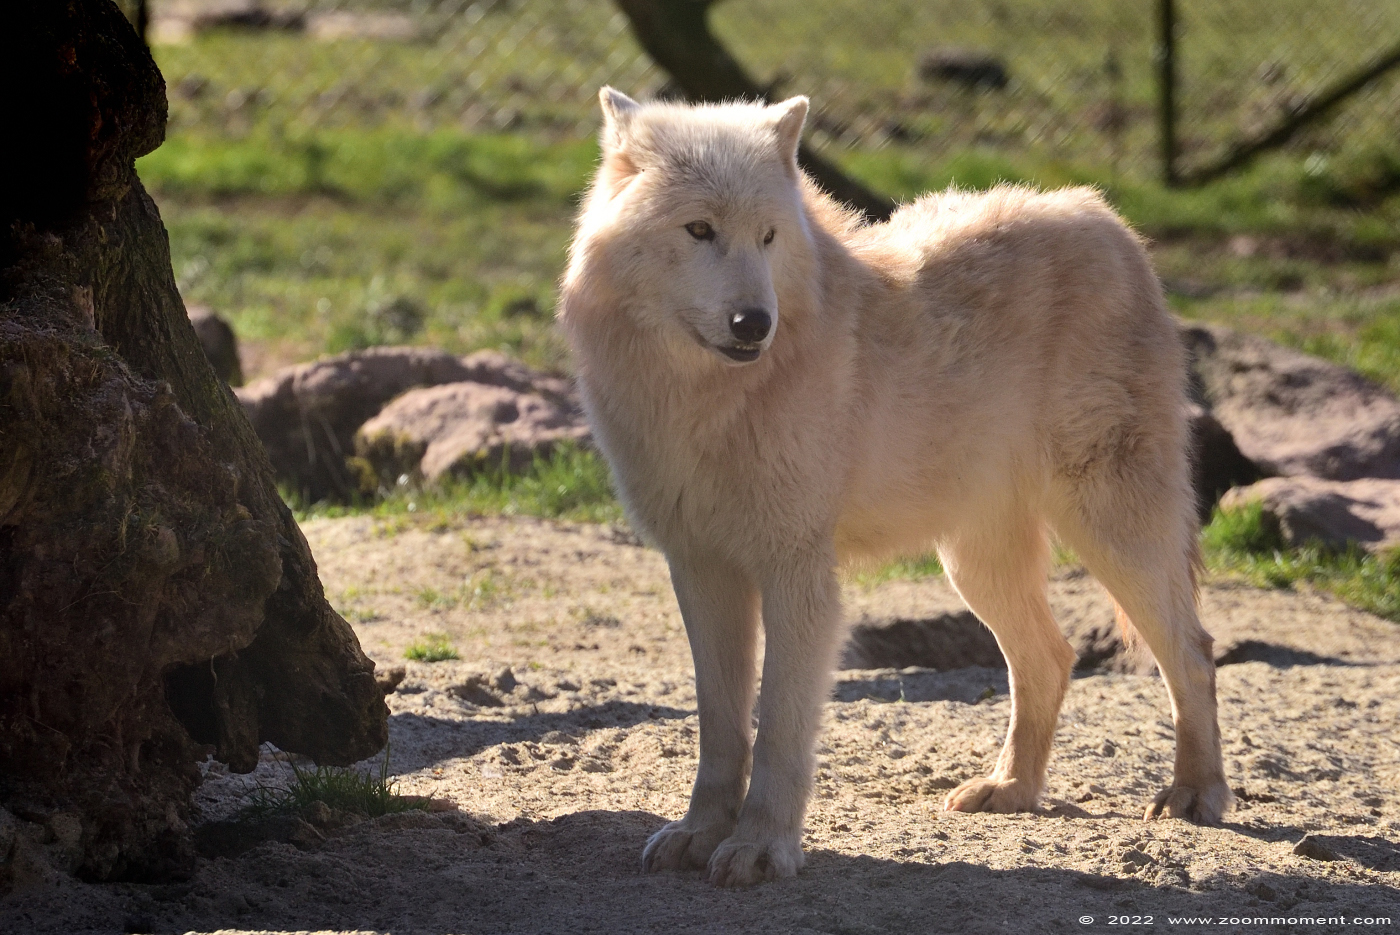 Witte wolf ( Canis lupus ) polar wolf
Trefwoorden: Monde Sauvage Belgium Witte wolf Canis lupus polar wolf